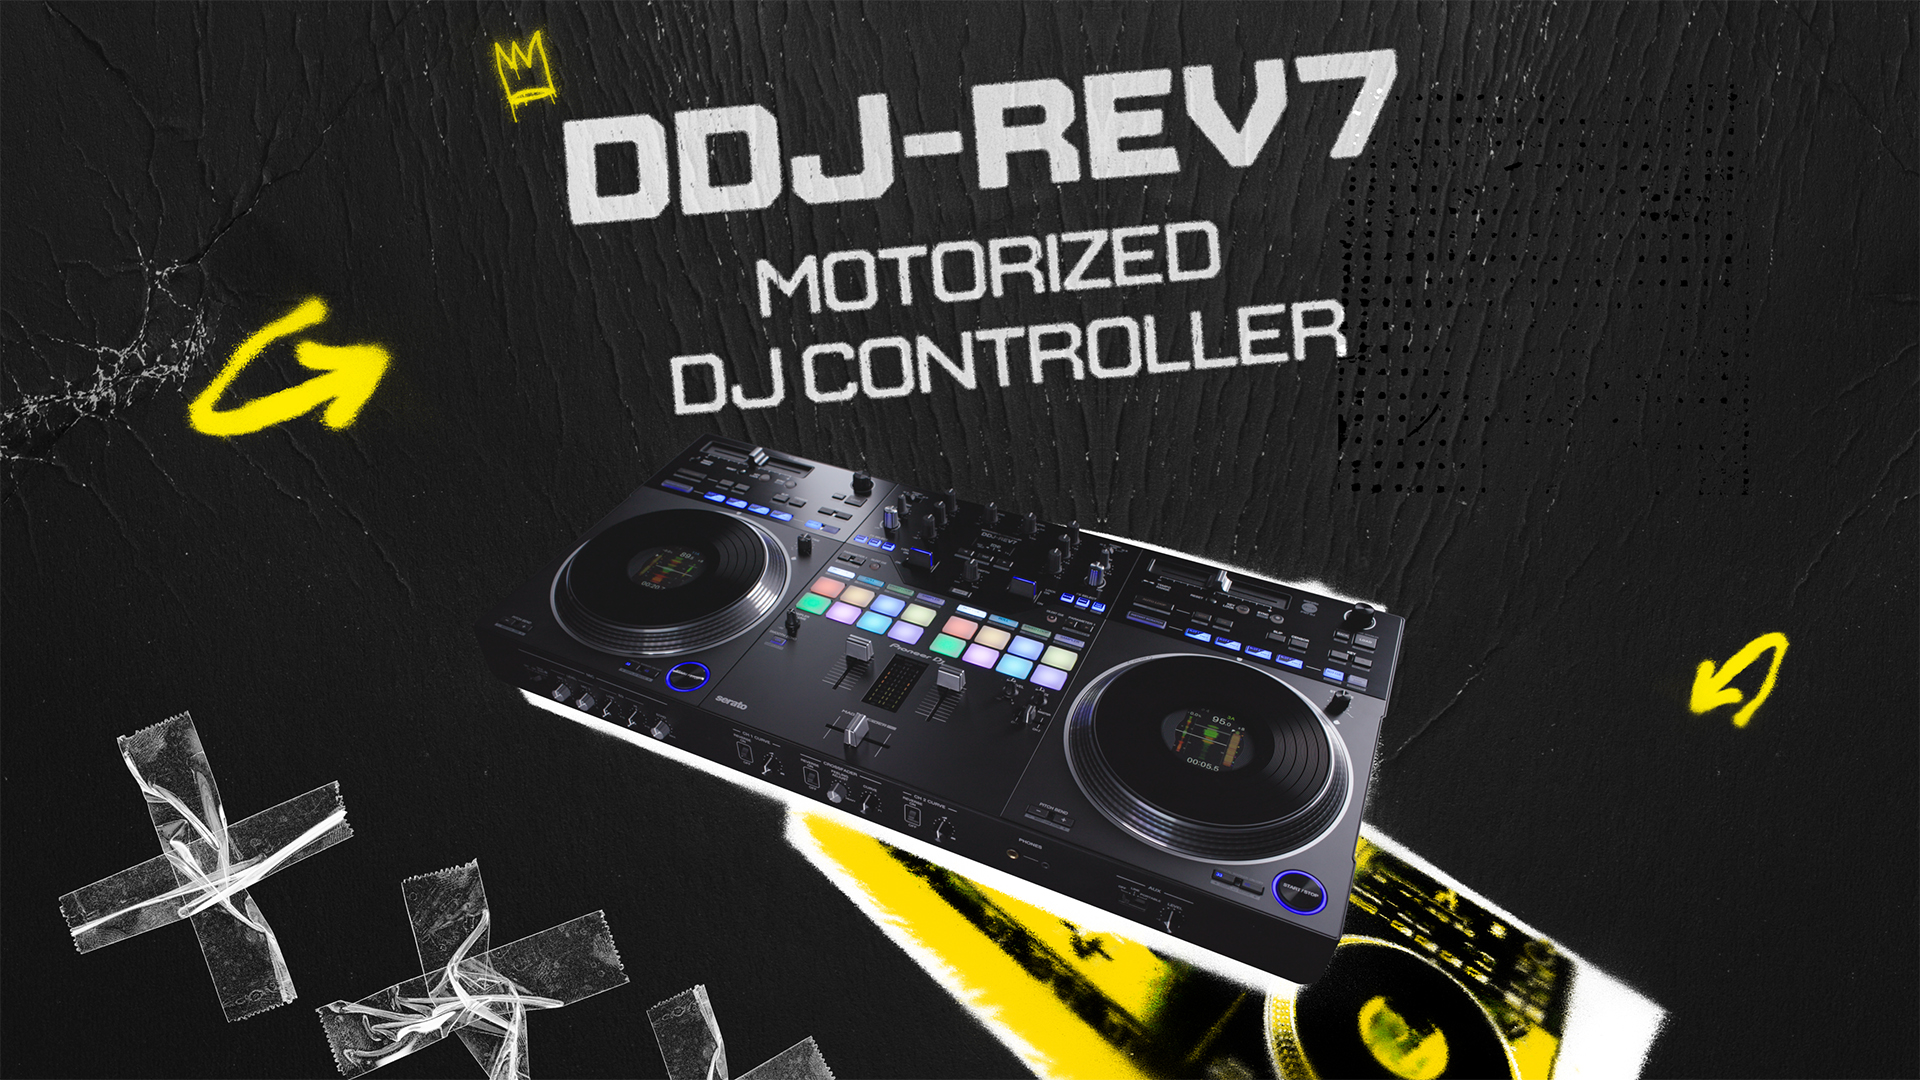 DDJ-REV1 Controladora para DJ de Pionner DJ - Audiocustom